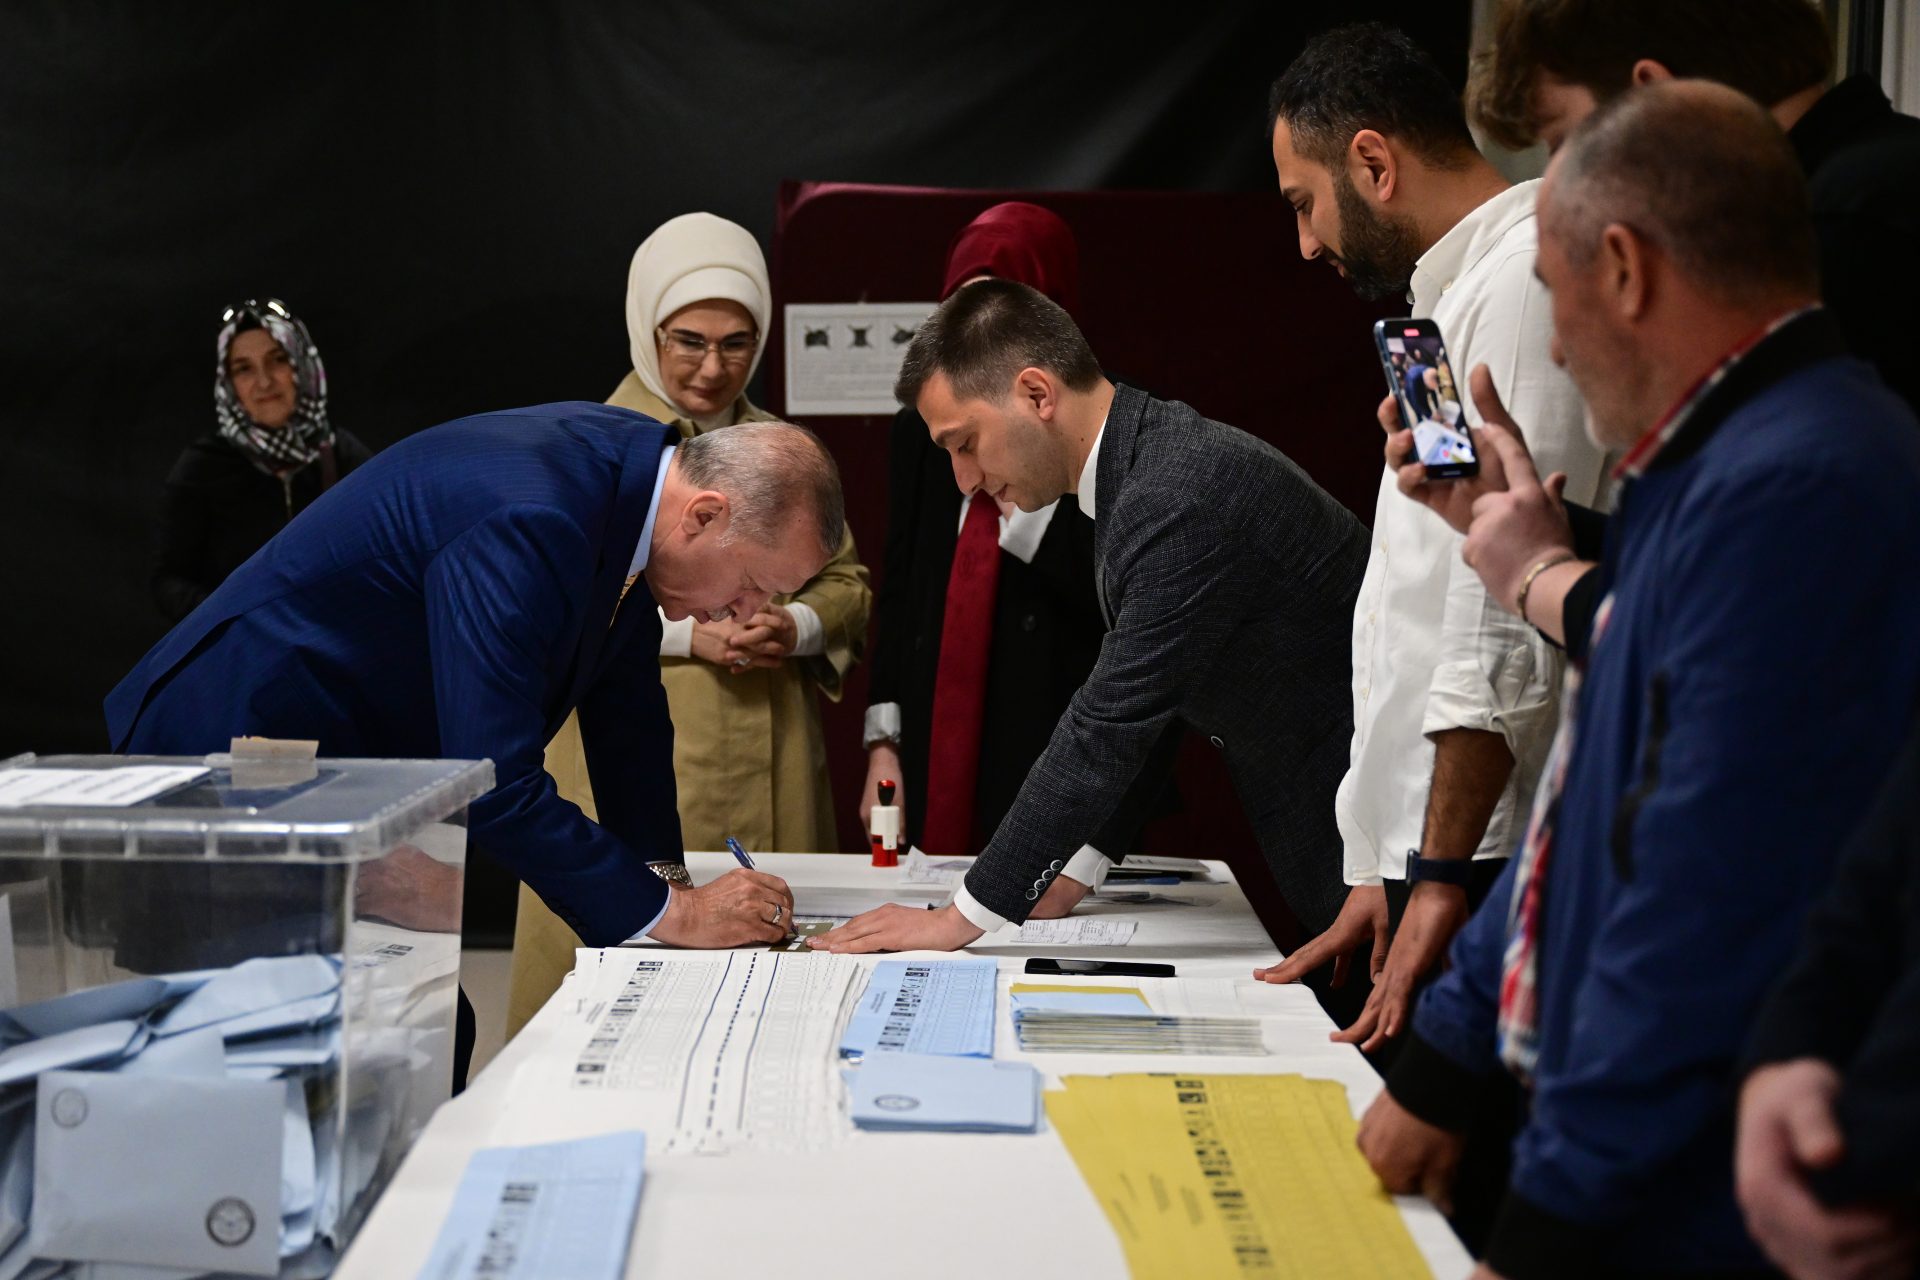 Les Turcs votent pour leurs maires, Erdogan aussi participe